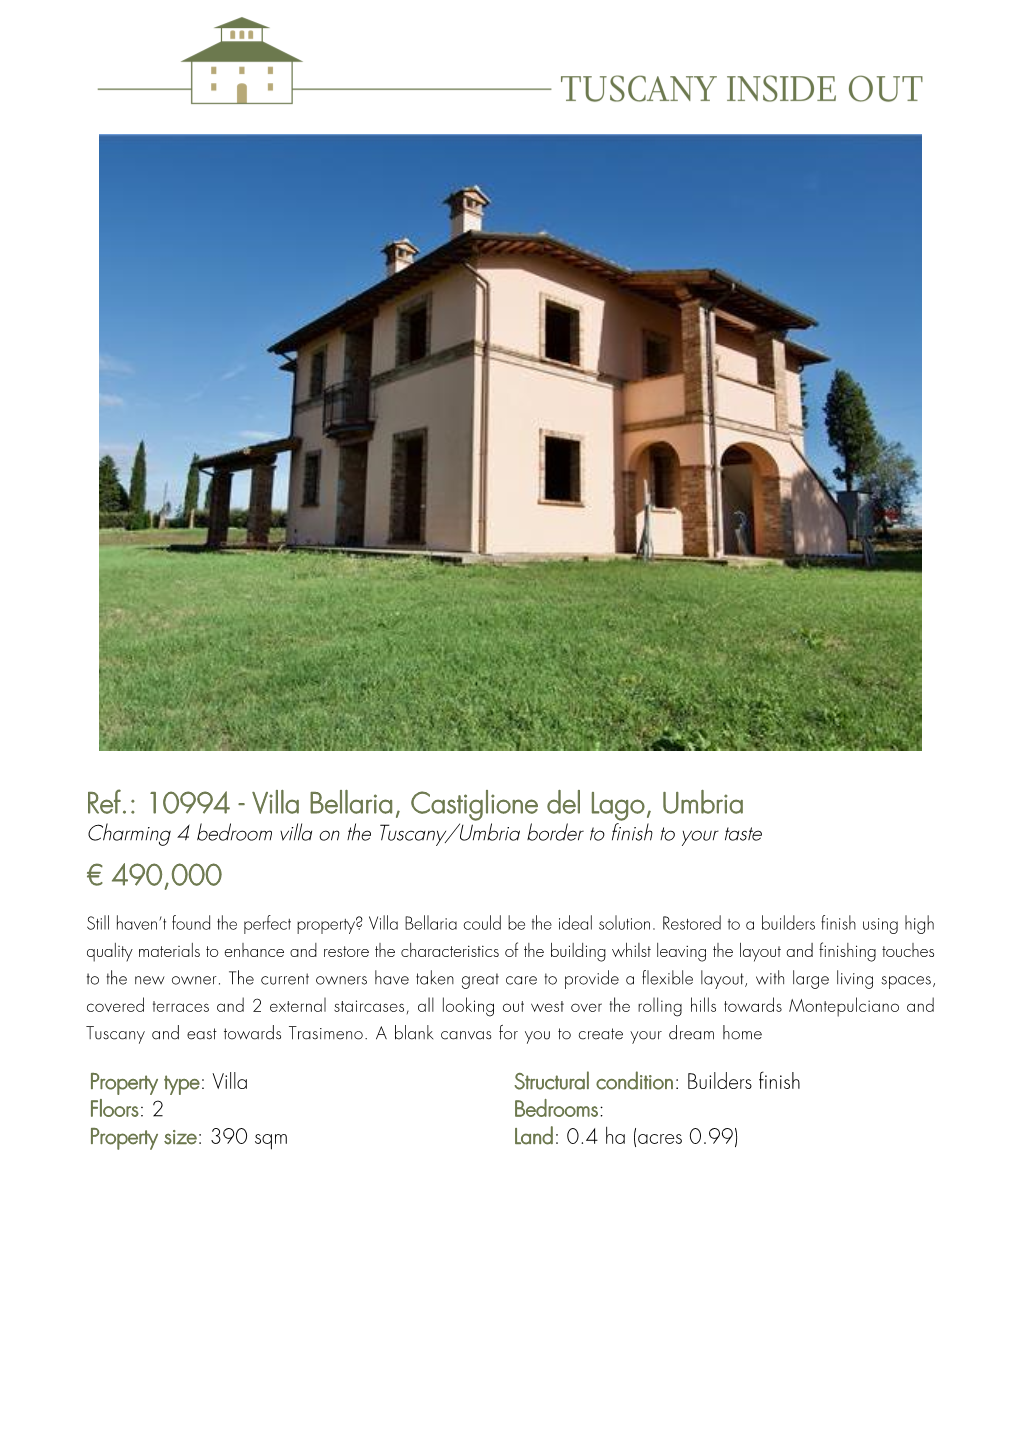 10994 - Villa Bellaria, Castiglione Del Lago, Umbria Charming 4 Bedroom Villa on the Tuscany/Umbria Border to Finish to Your Taste